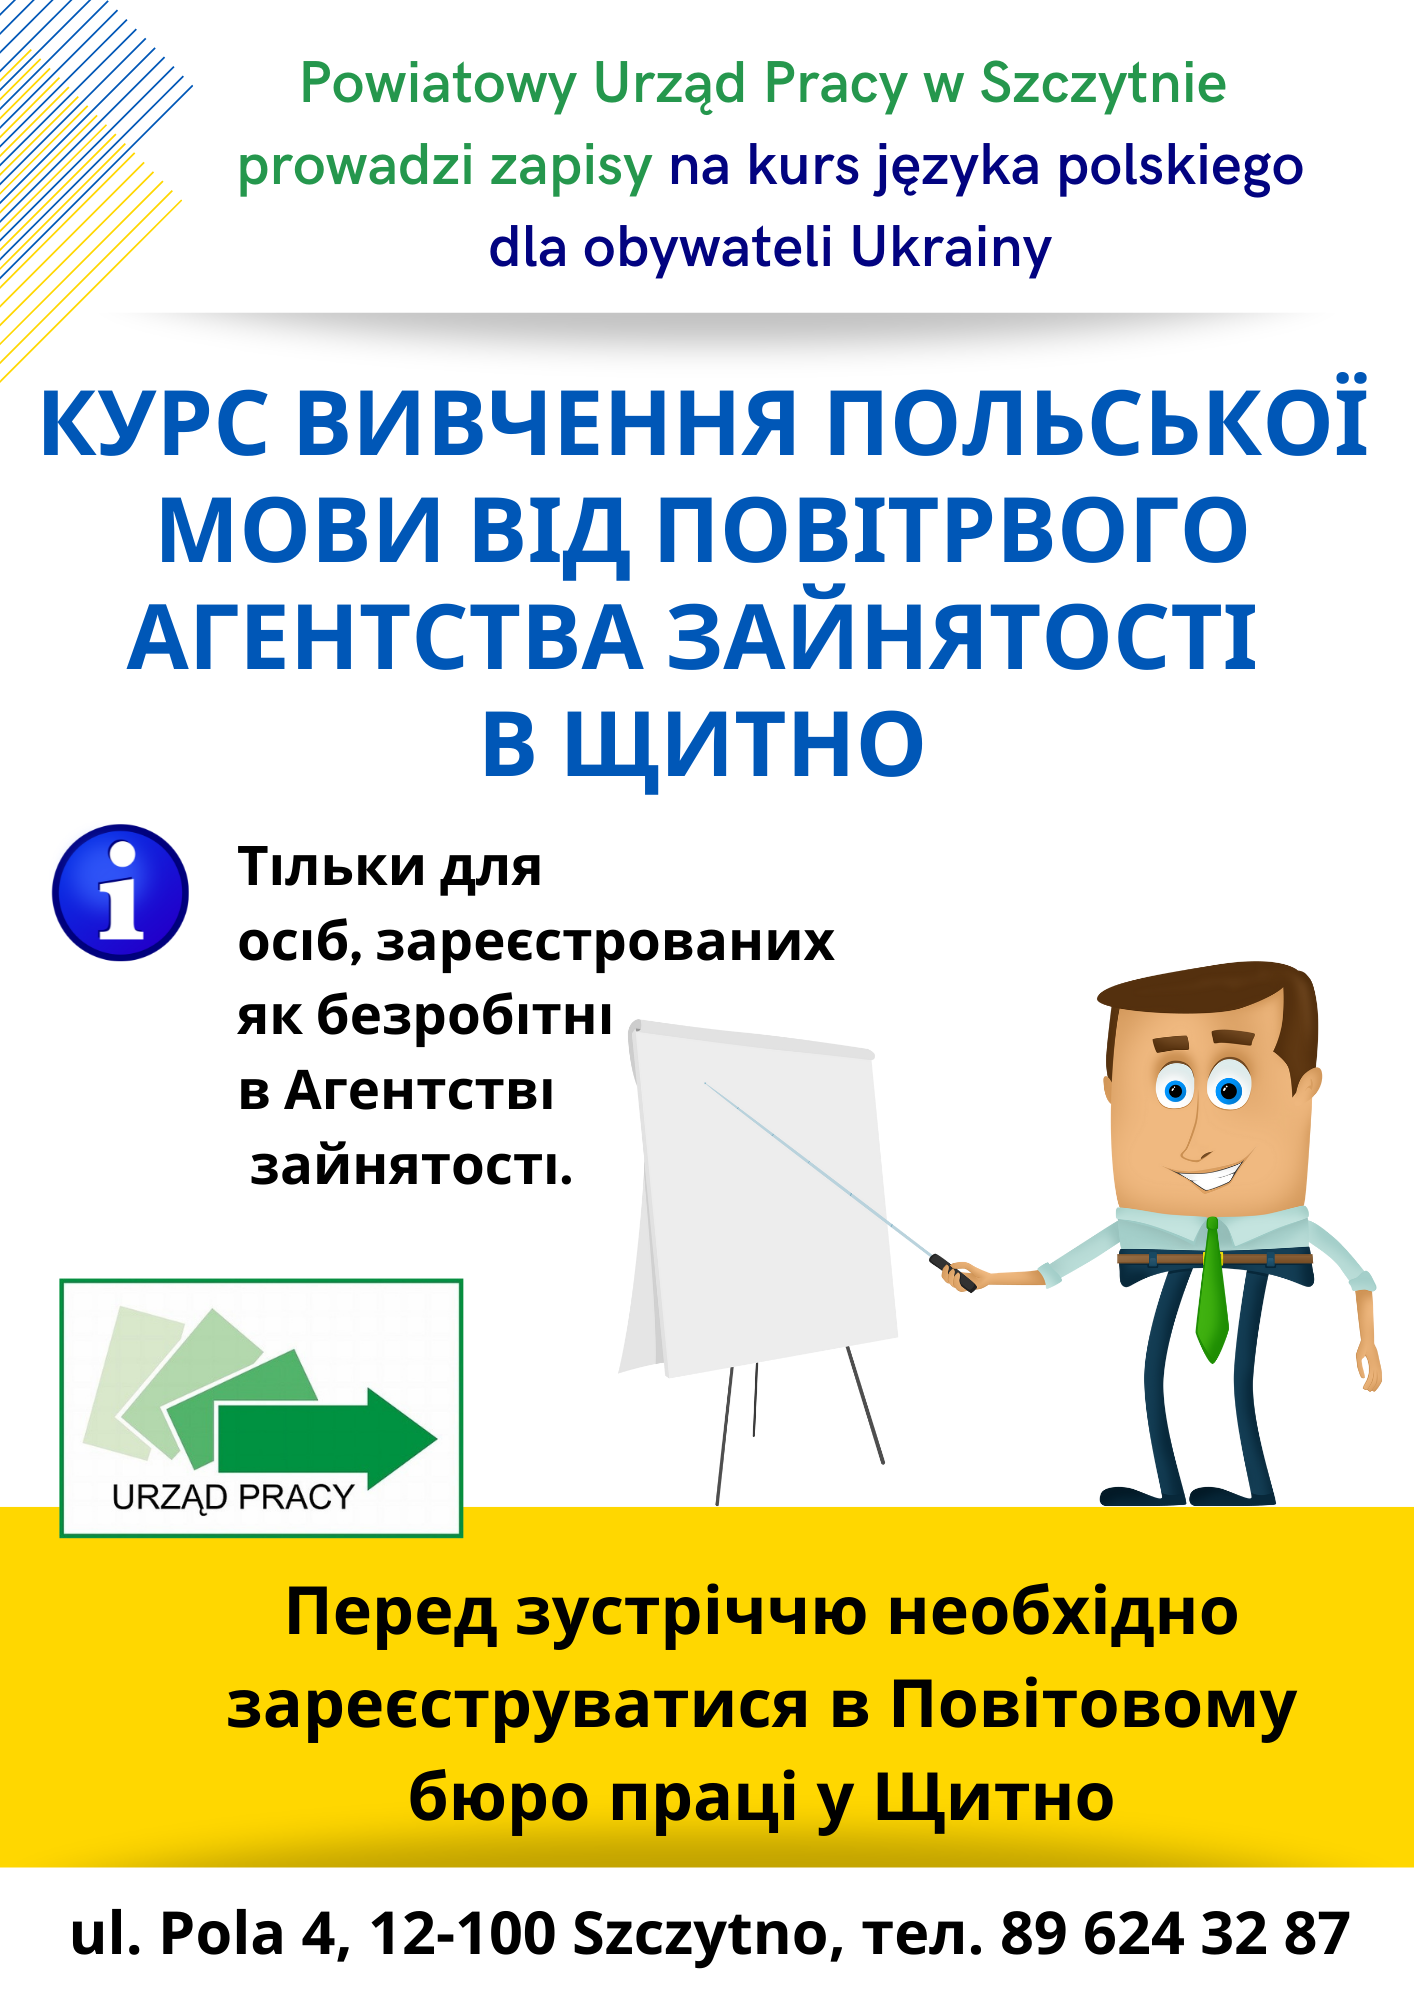 baner o kursie języka polskiego dla obywateli Ukrainy